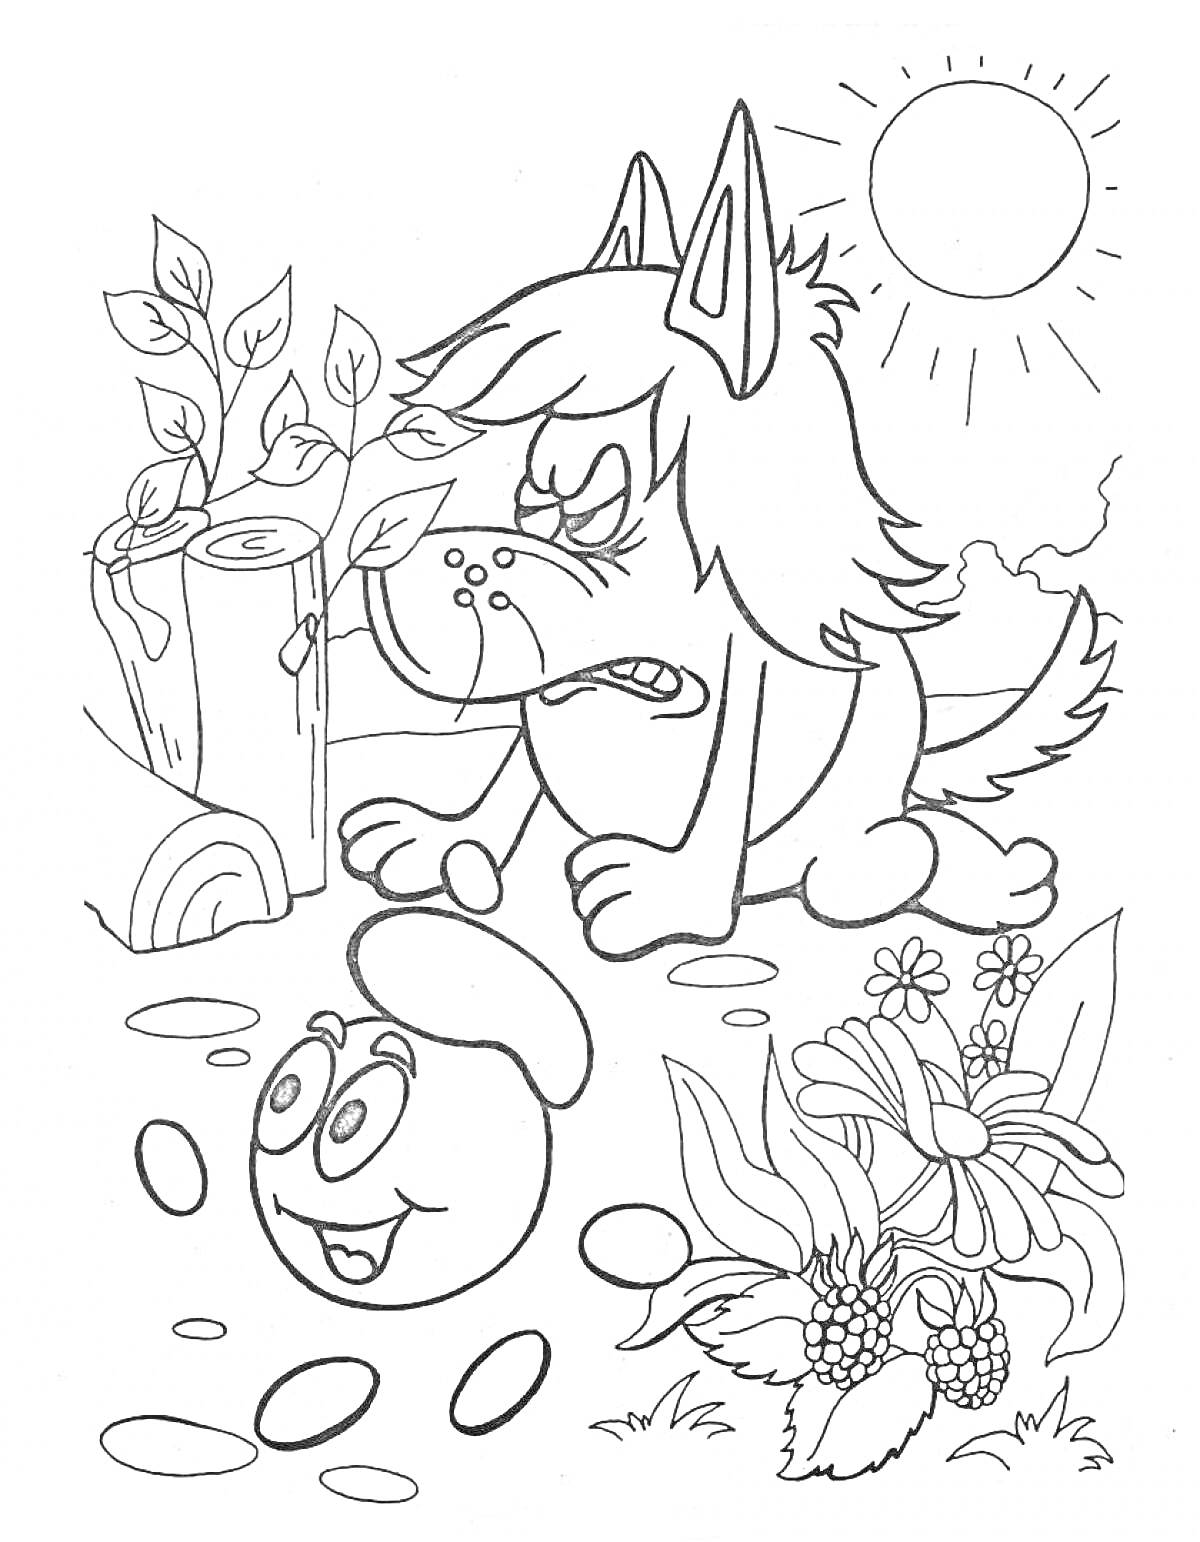 Раскраска Капитошка и сердитый волк на лесной поляне с цветами и солнцем